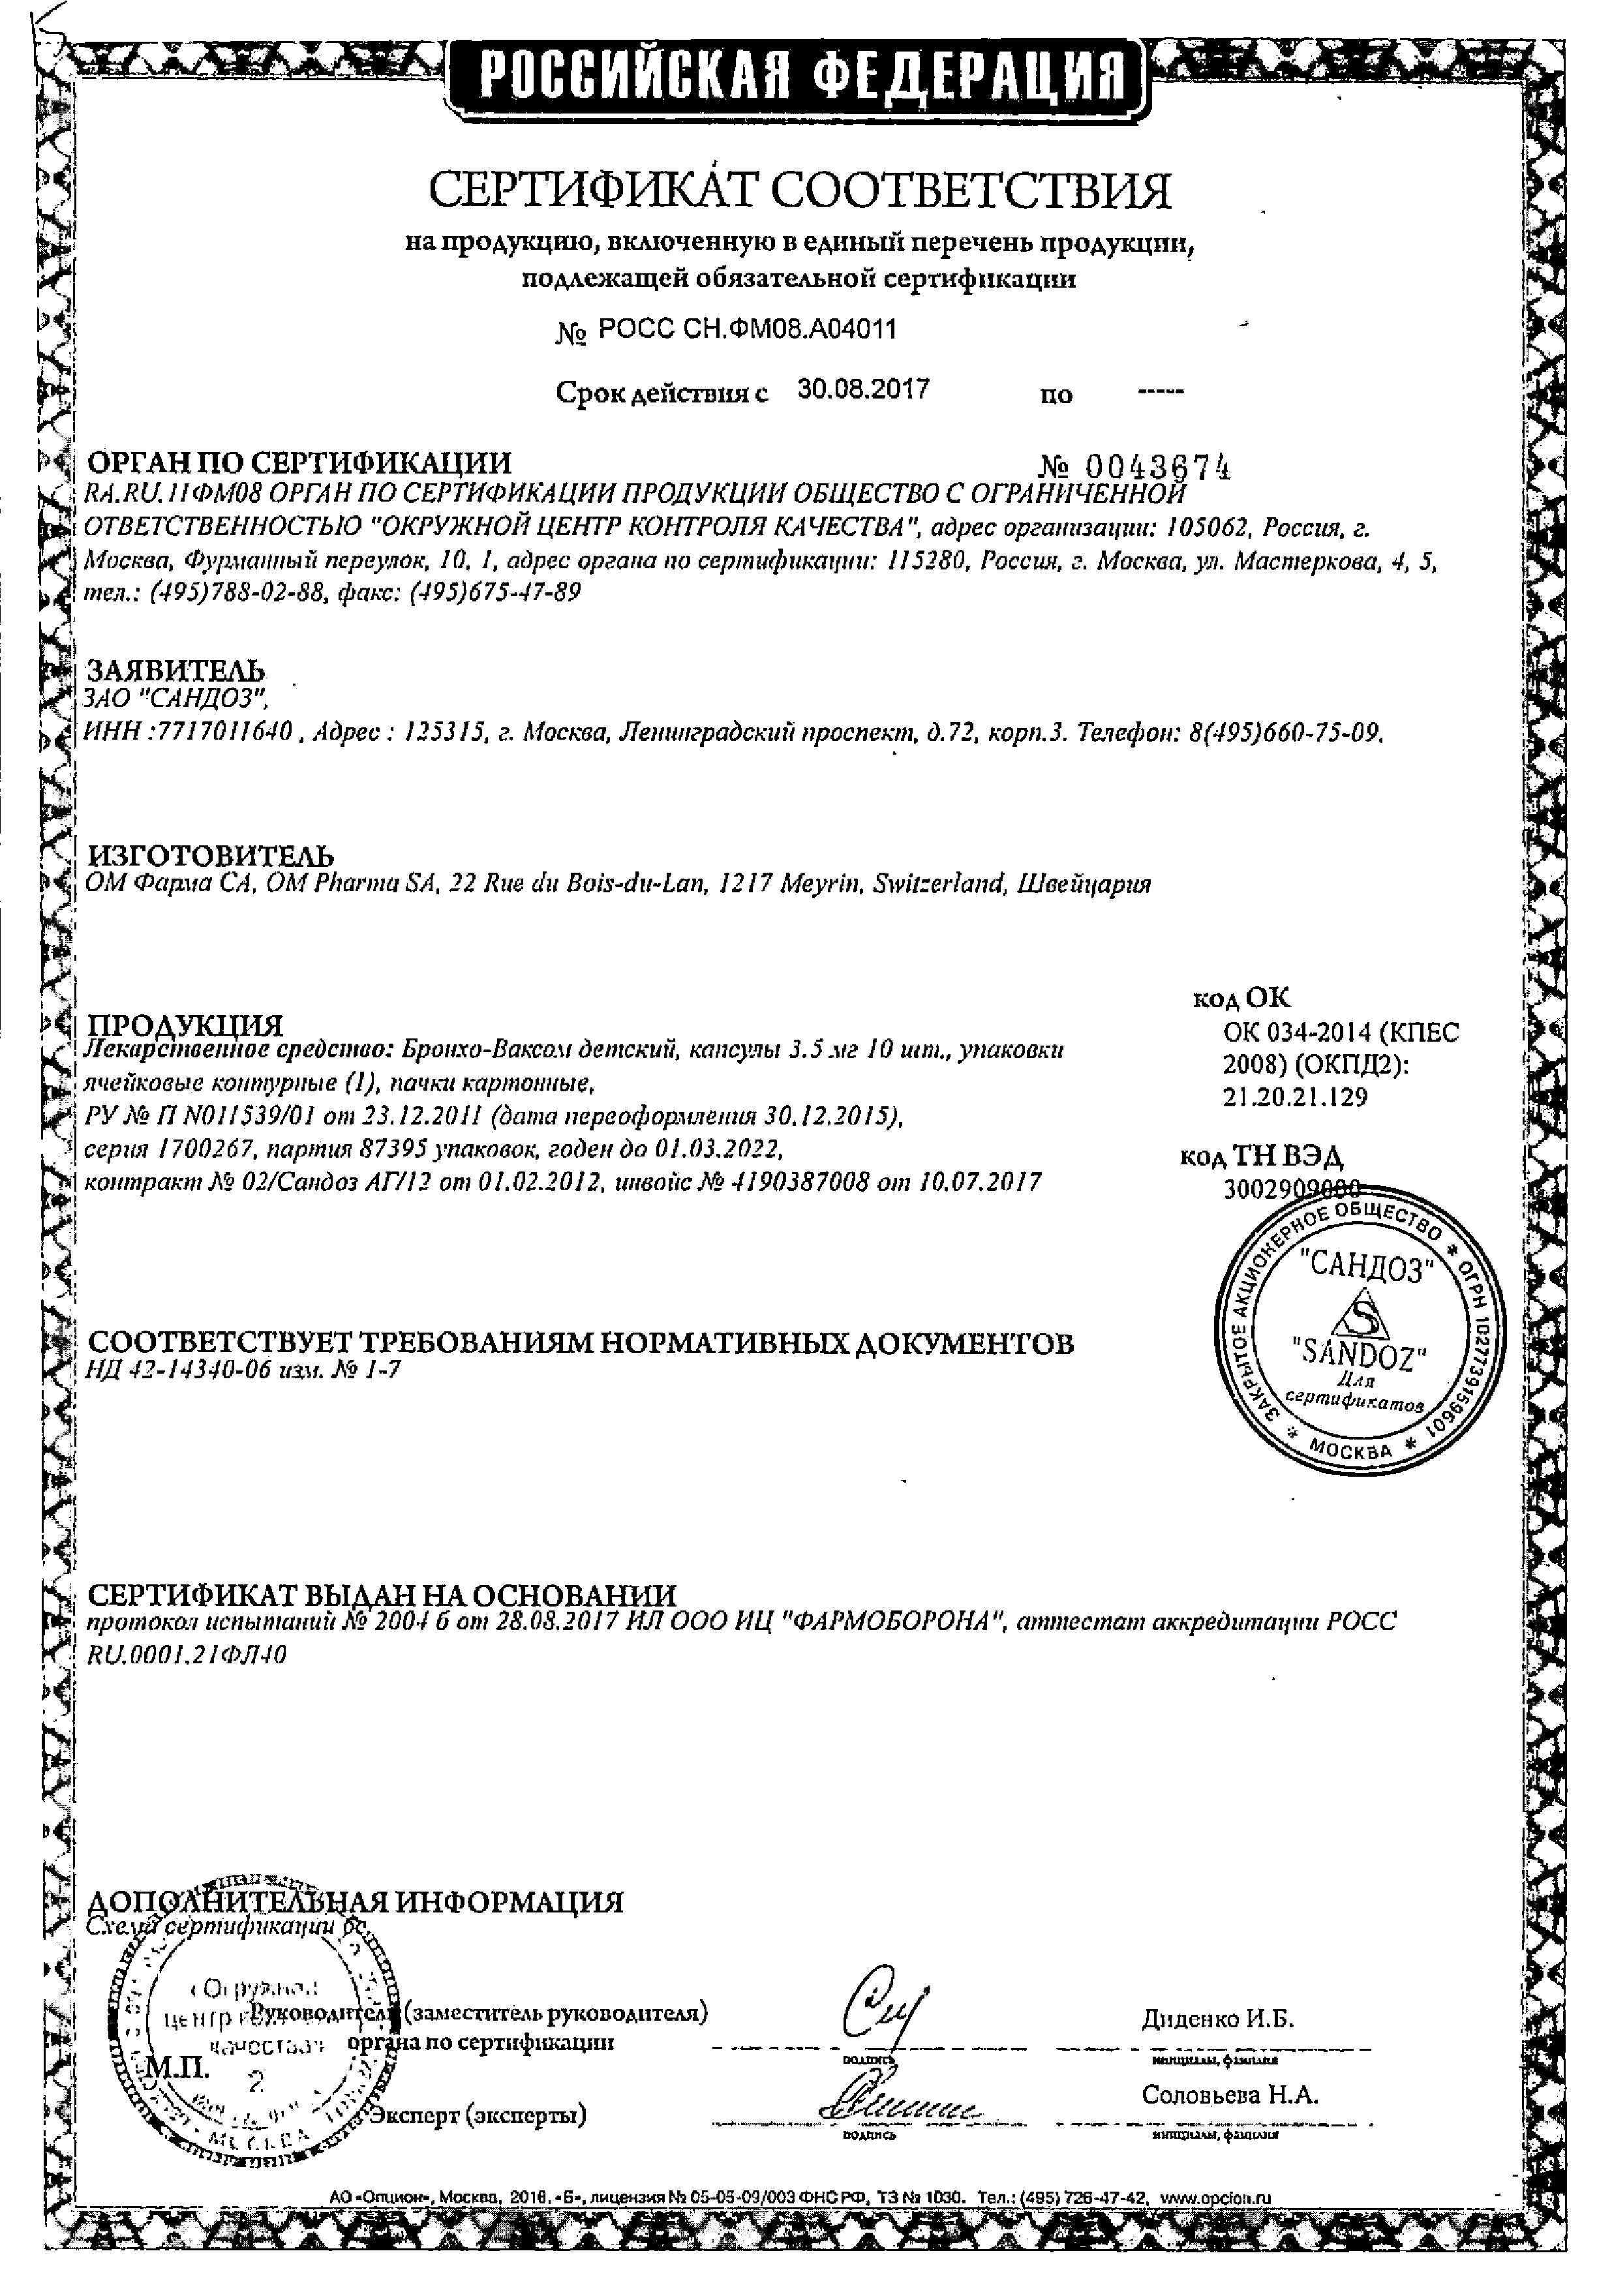 Бронхо-Ваксом детский сертификат